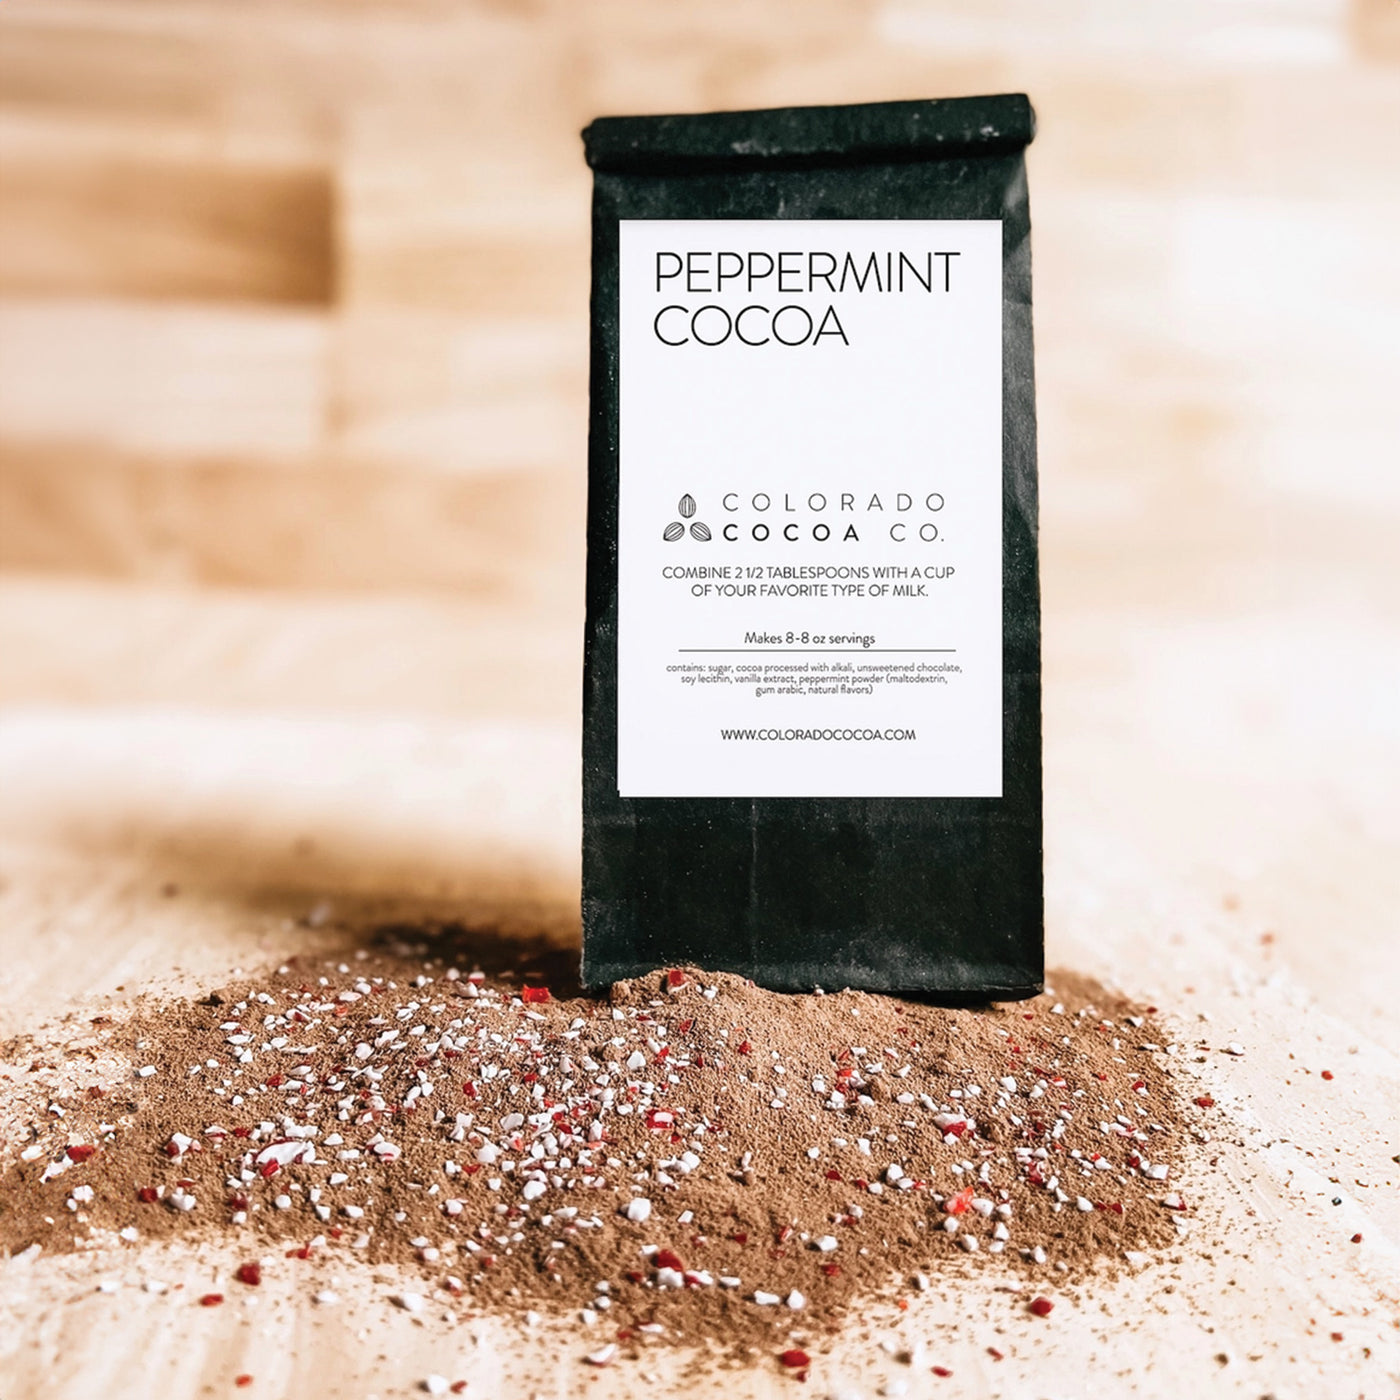 Colorado Cocoa Company | Peppermint Cocoa